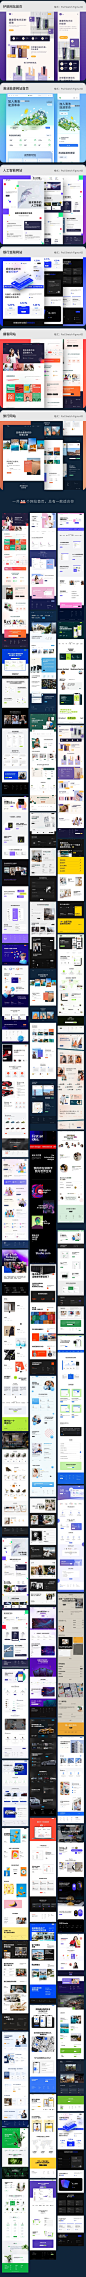 中文企业公司网页网站首页xd模板手机网站sketch设计psd素材H113